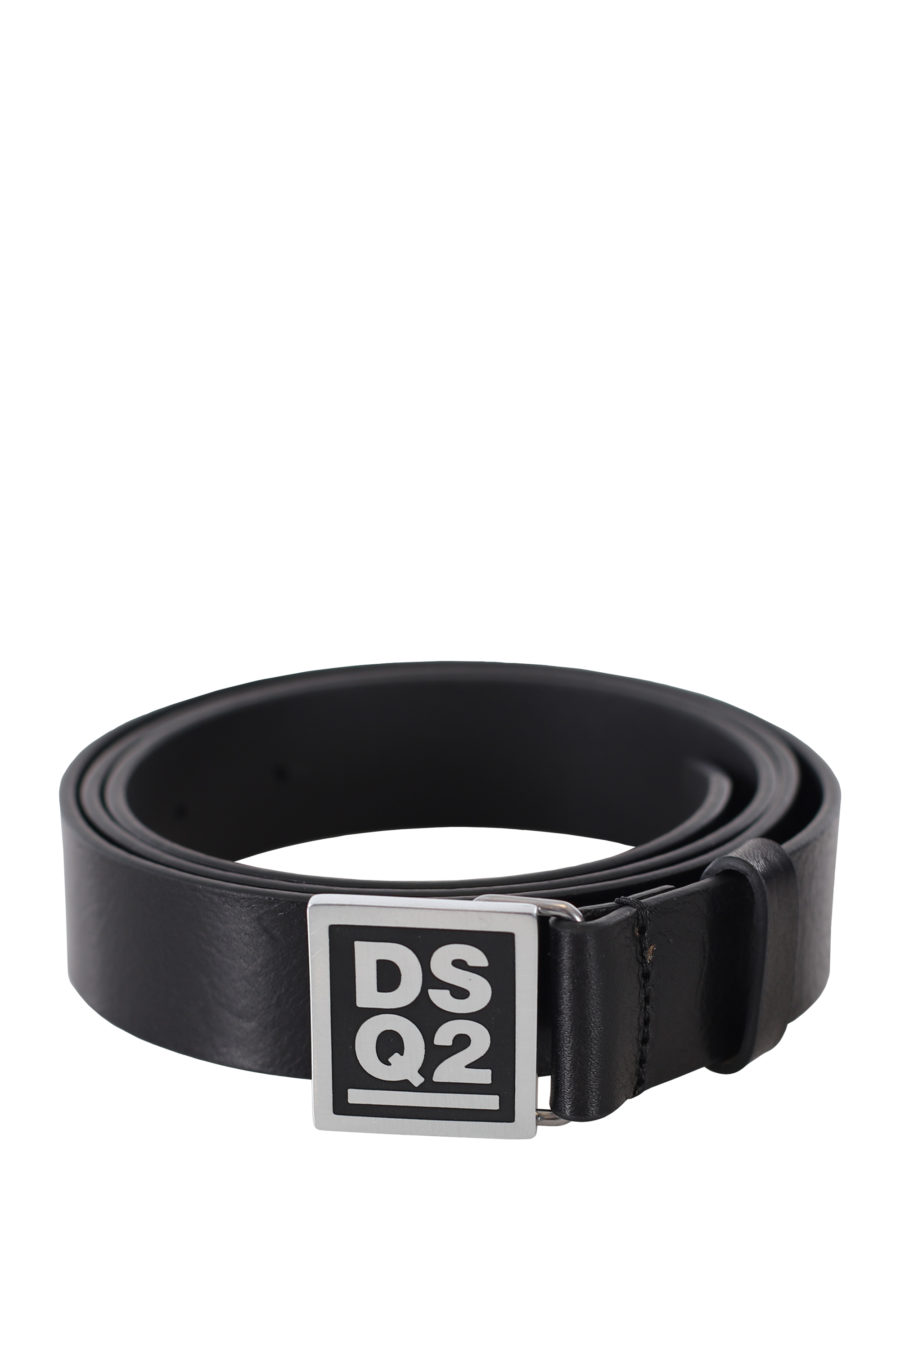 Cinturón negro con logo "dsq2" en placa - IMG 9401